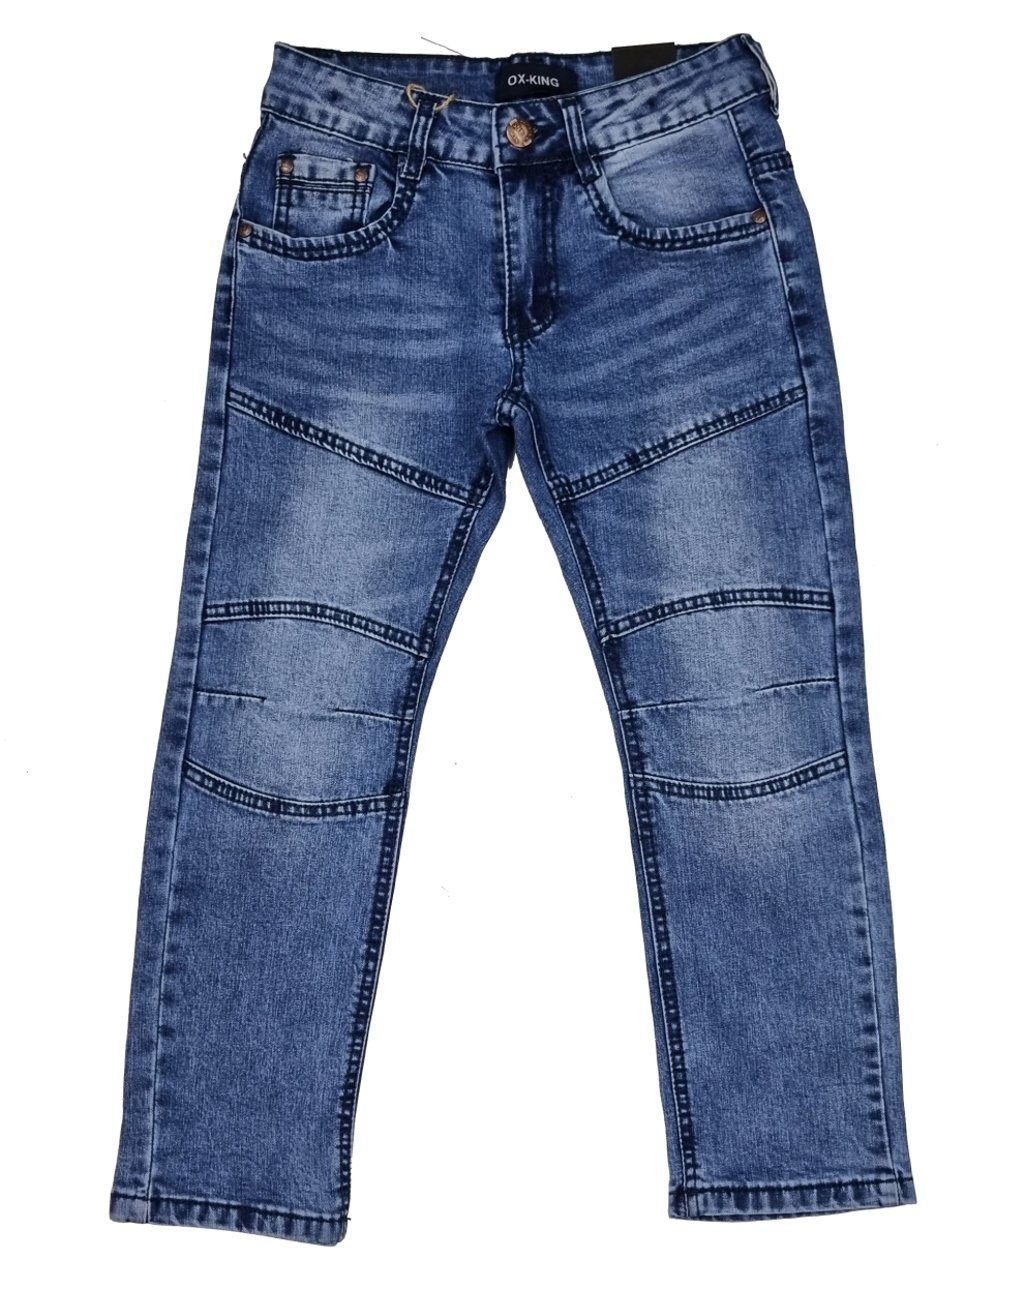 Fashion Boy Bequeme Hose Kinderhose Jeans Jeans Jungen Jeanshose, J626 Kinder